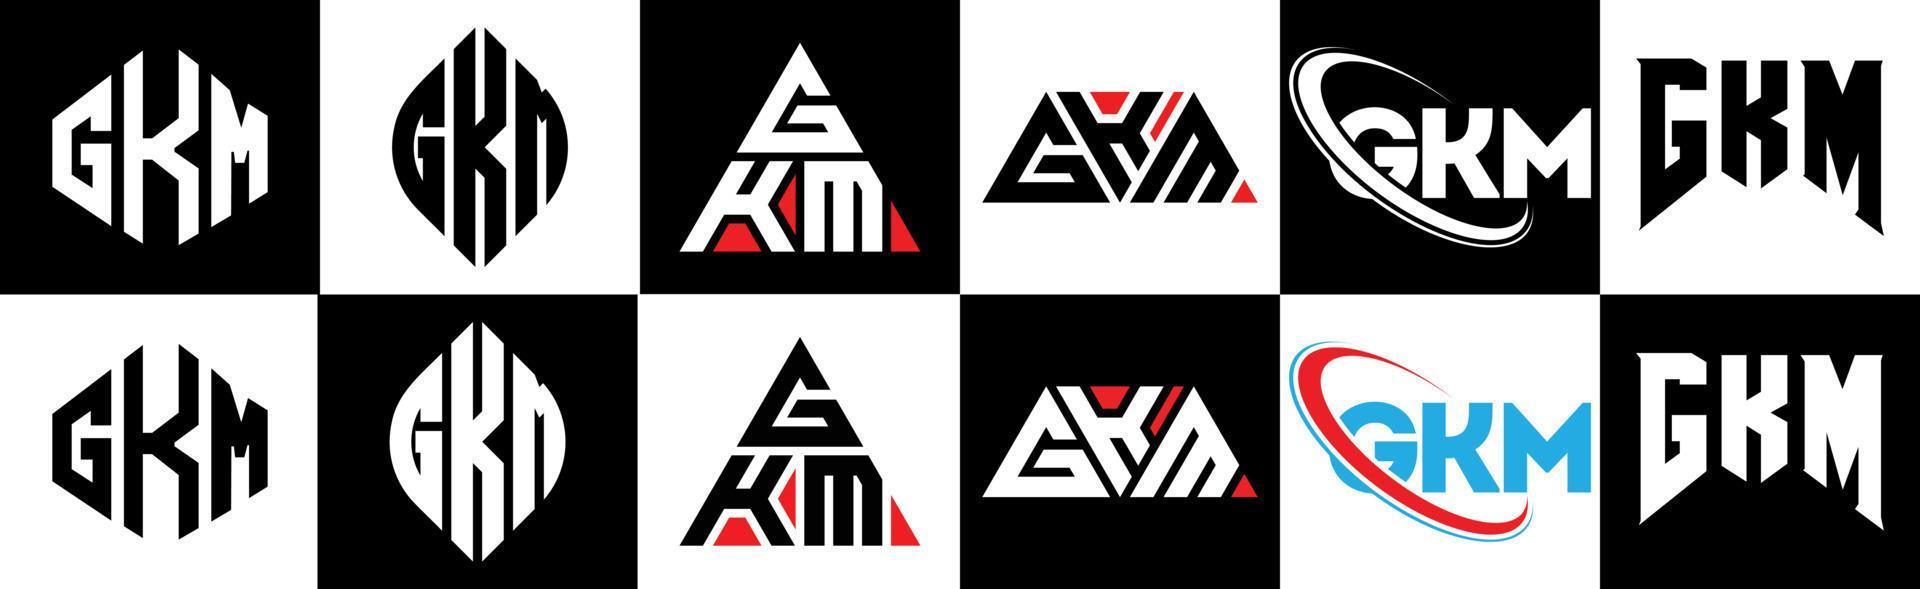 gkm-Buchstaben-Logo-Design in sechs Stilen. gkm Polygon, Kreis, Dreieck, Sechseck, flacher und einfacher Stil mit schwarz-weißem Buchstabenlogo in einer Zeichenfläche. gkm minimalistisches und klassisches Logo vektor